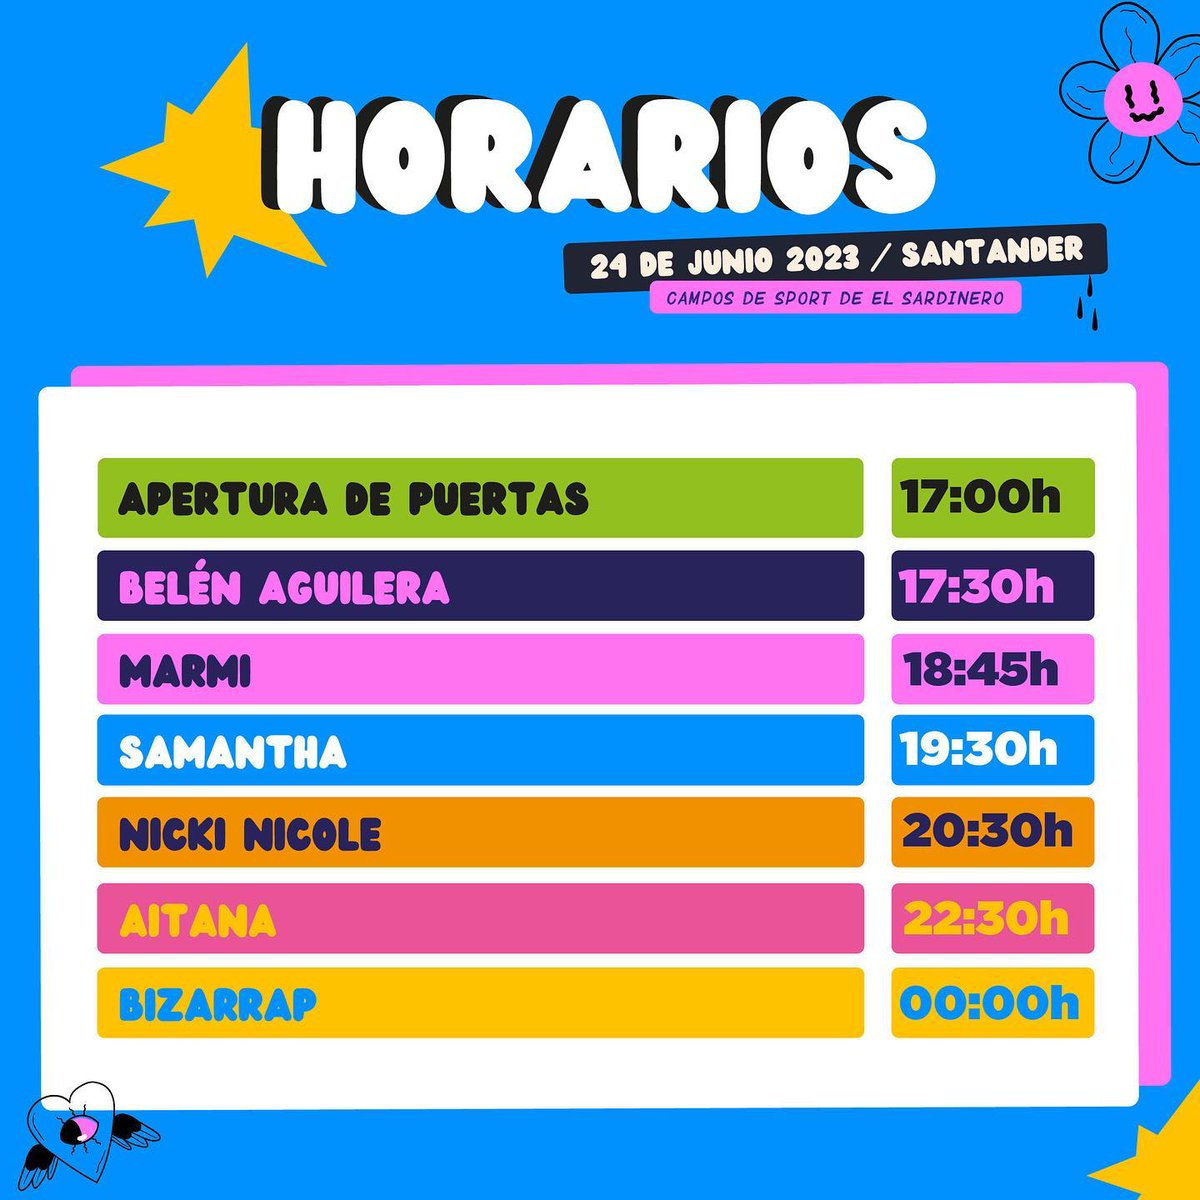 El próximo 24 de junio, Samantha se presenta en Santander con el festival #MyFest, a las 19:30. Últimas entradas disponibles en myfest23.com/entradas/